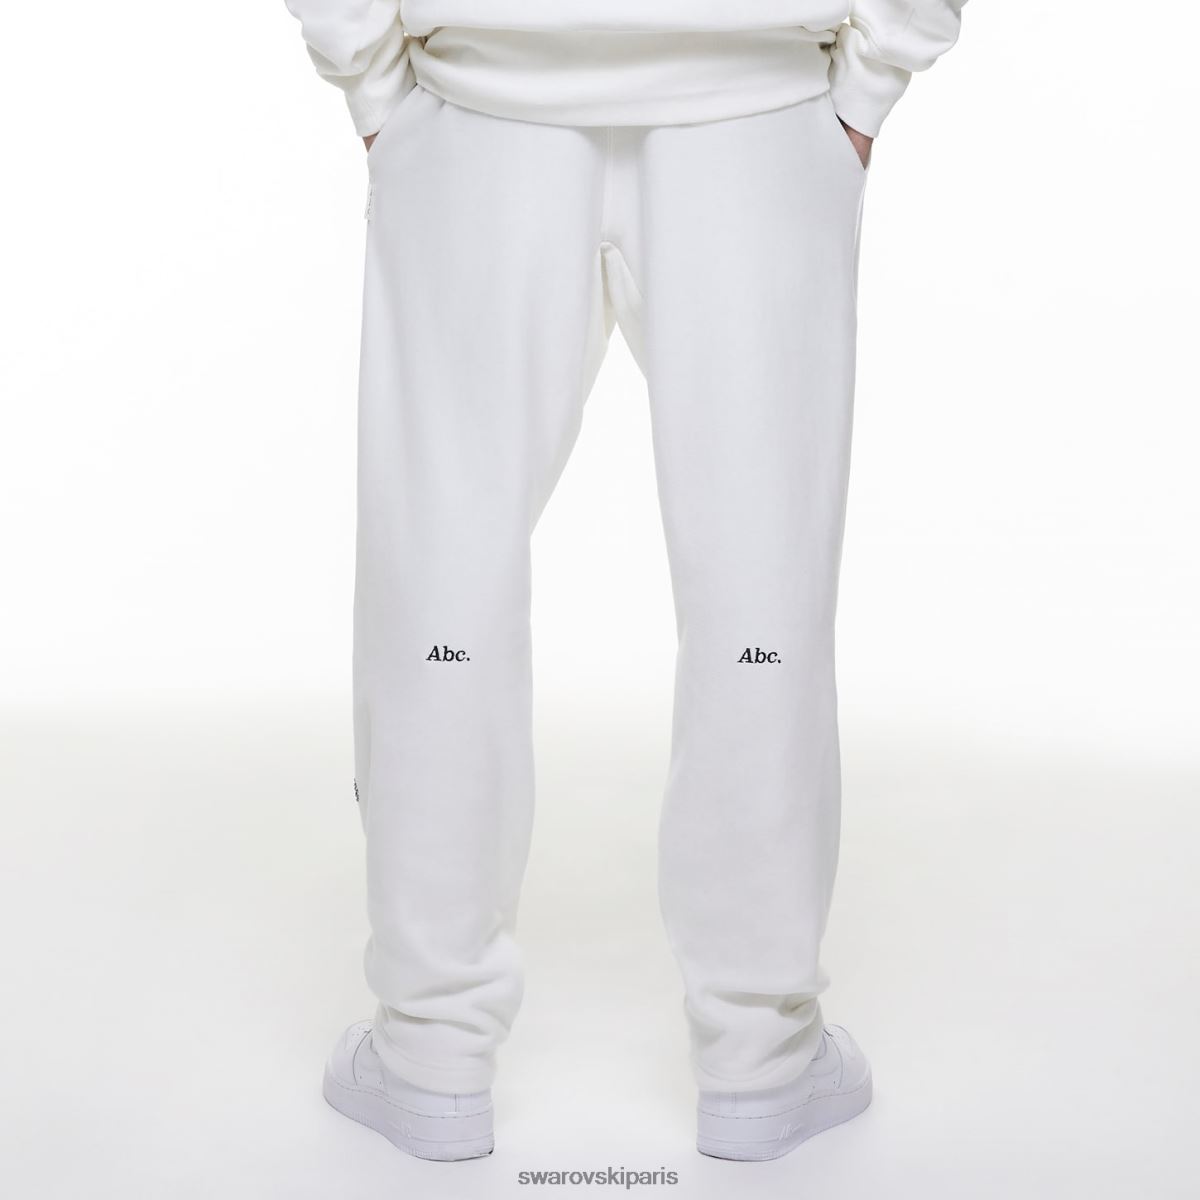 les pantalons de survêtement Swarovski objets gris déplacés par des pantalons de survêtement de réfraction blanc RZD0XJ1503